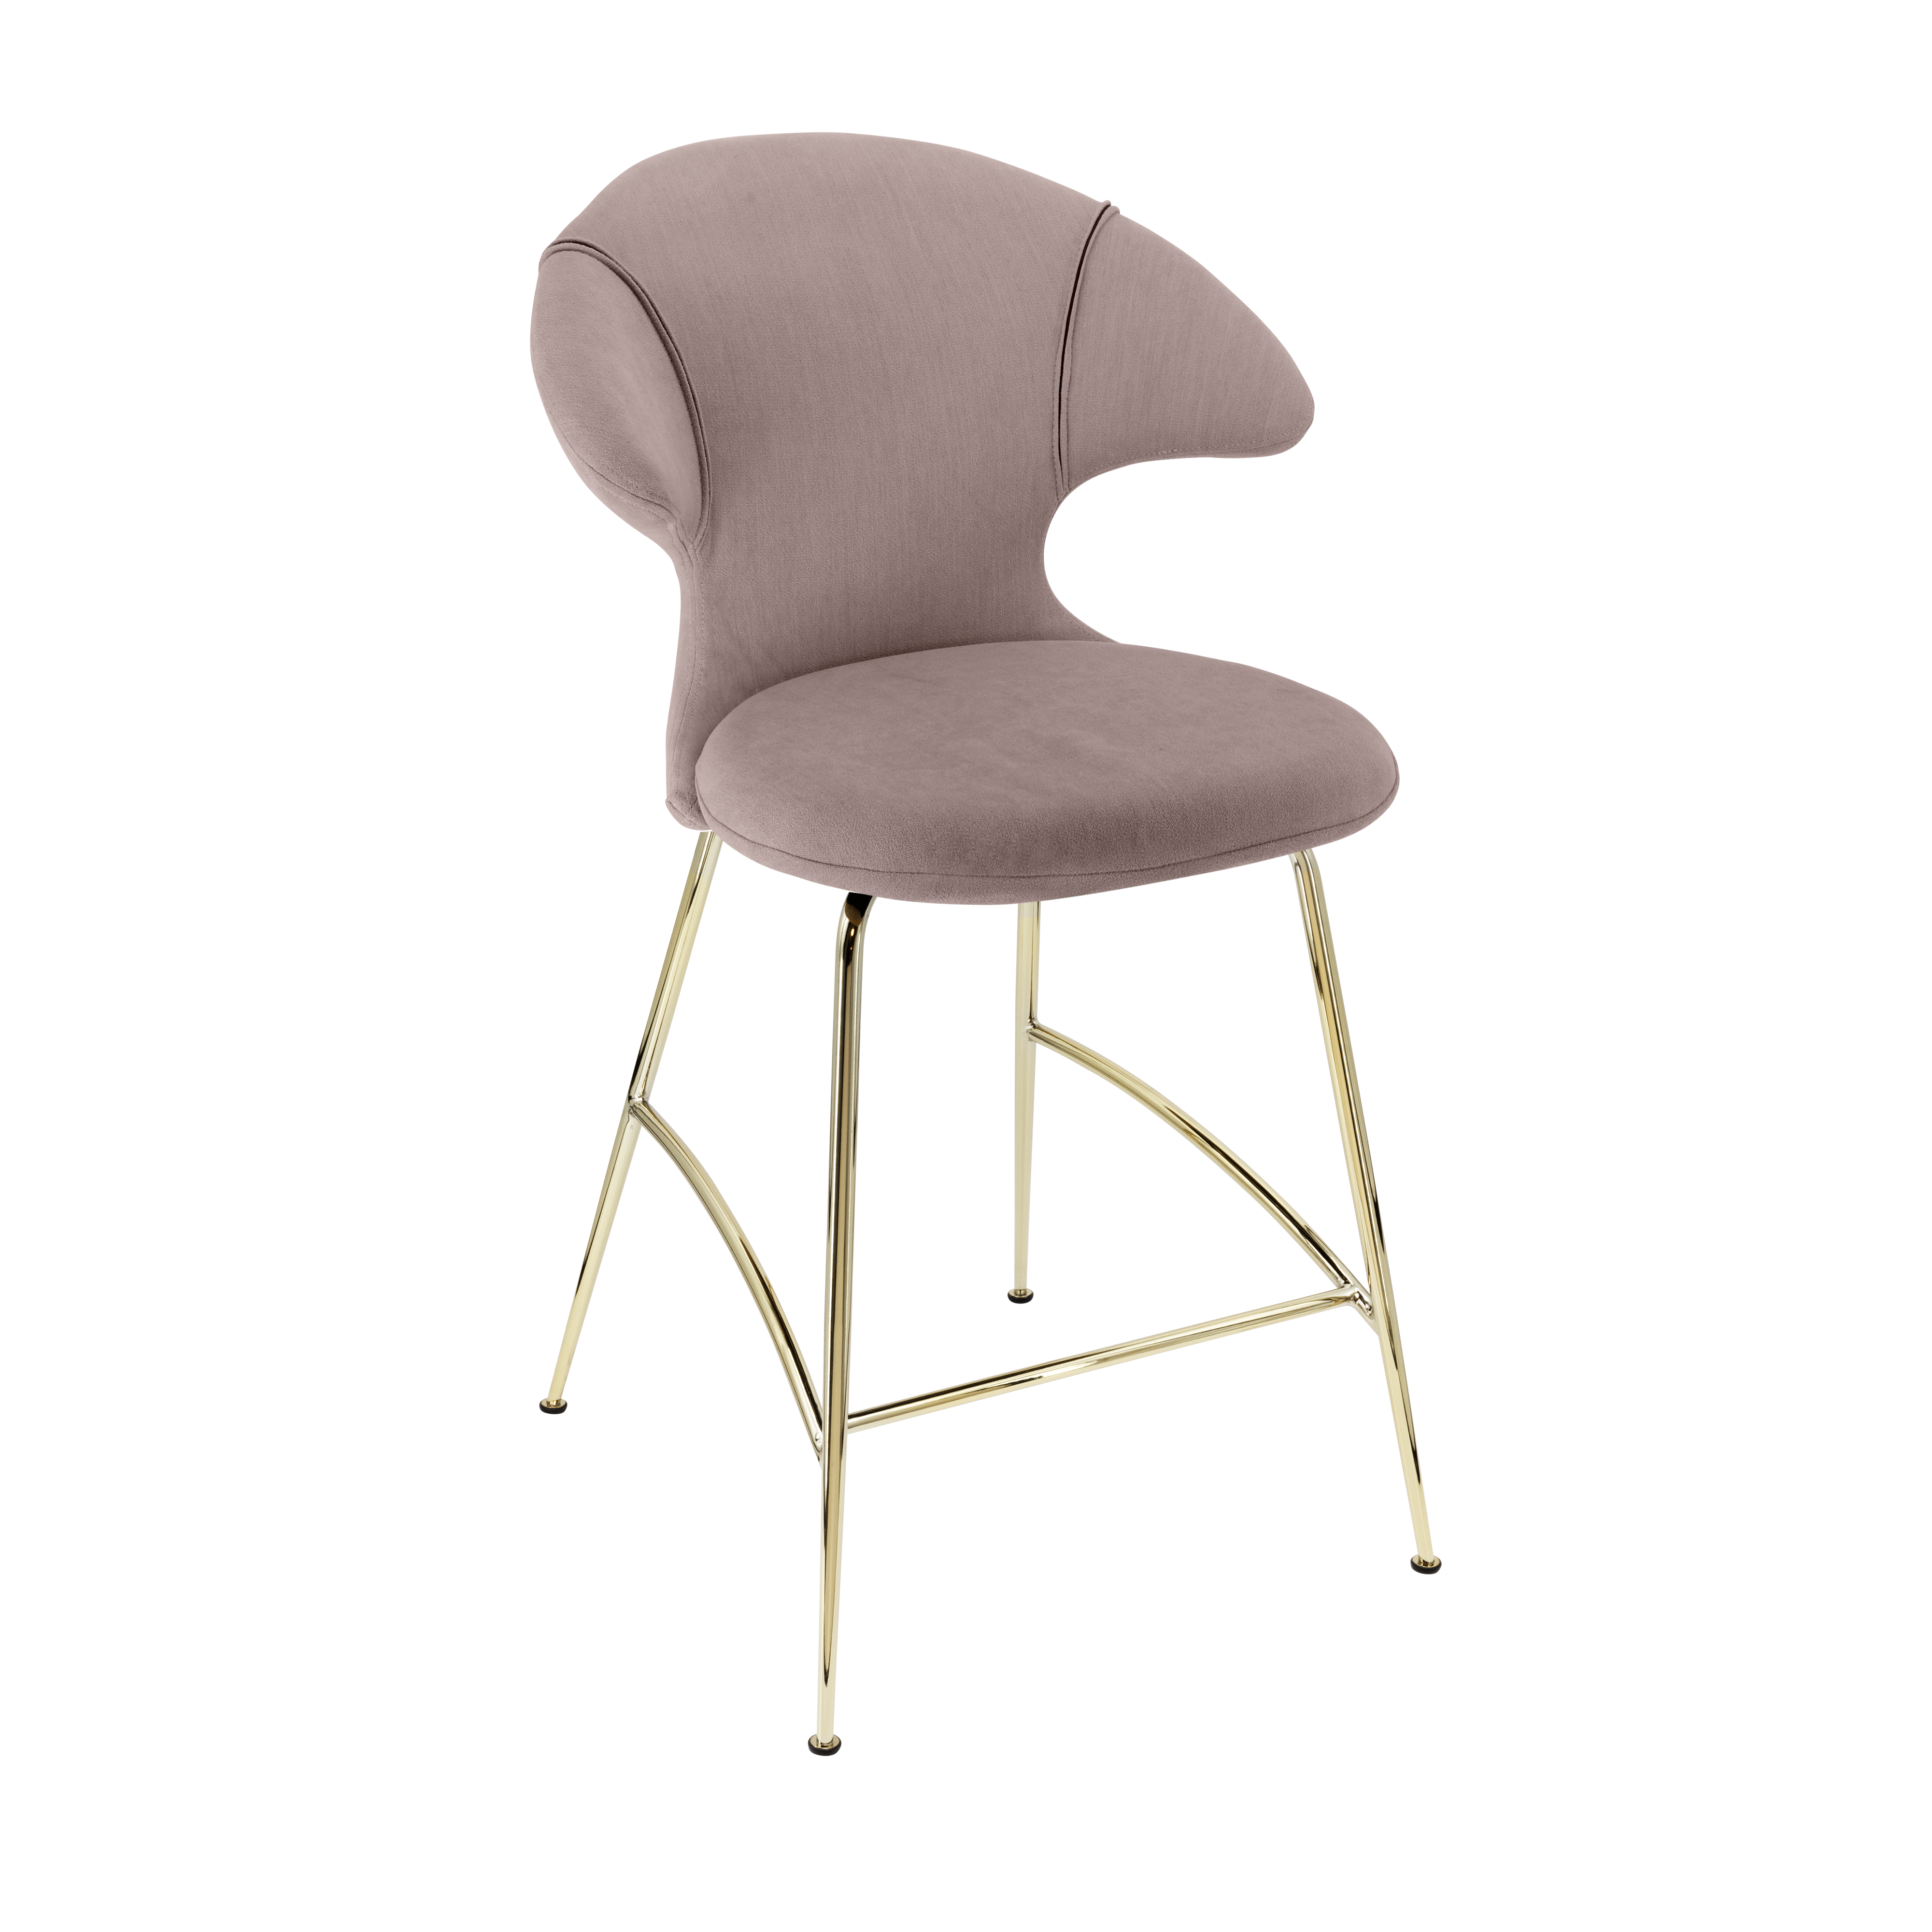 Time Flies Counter Stuhl in Monrose präsentiert im Onlineshop von KAQTU Design AG. Barstuhl mit Armlehne ist von Umage